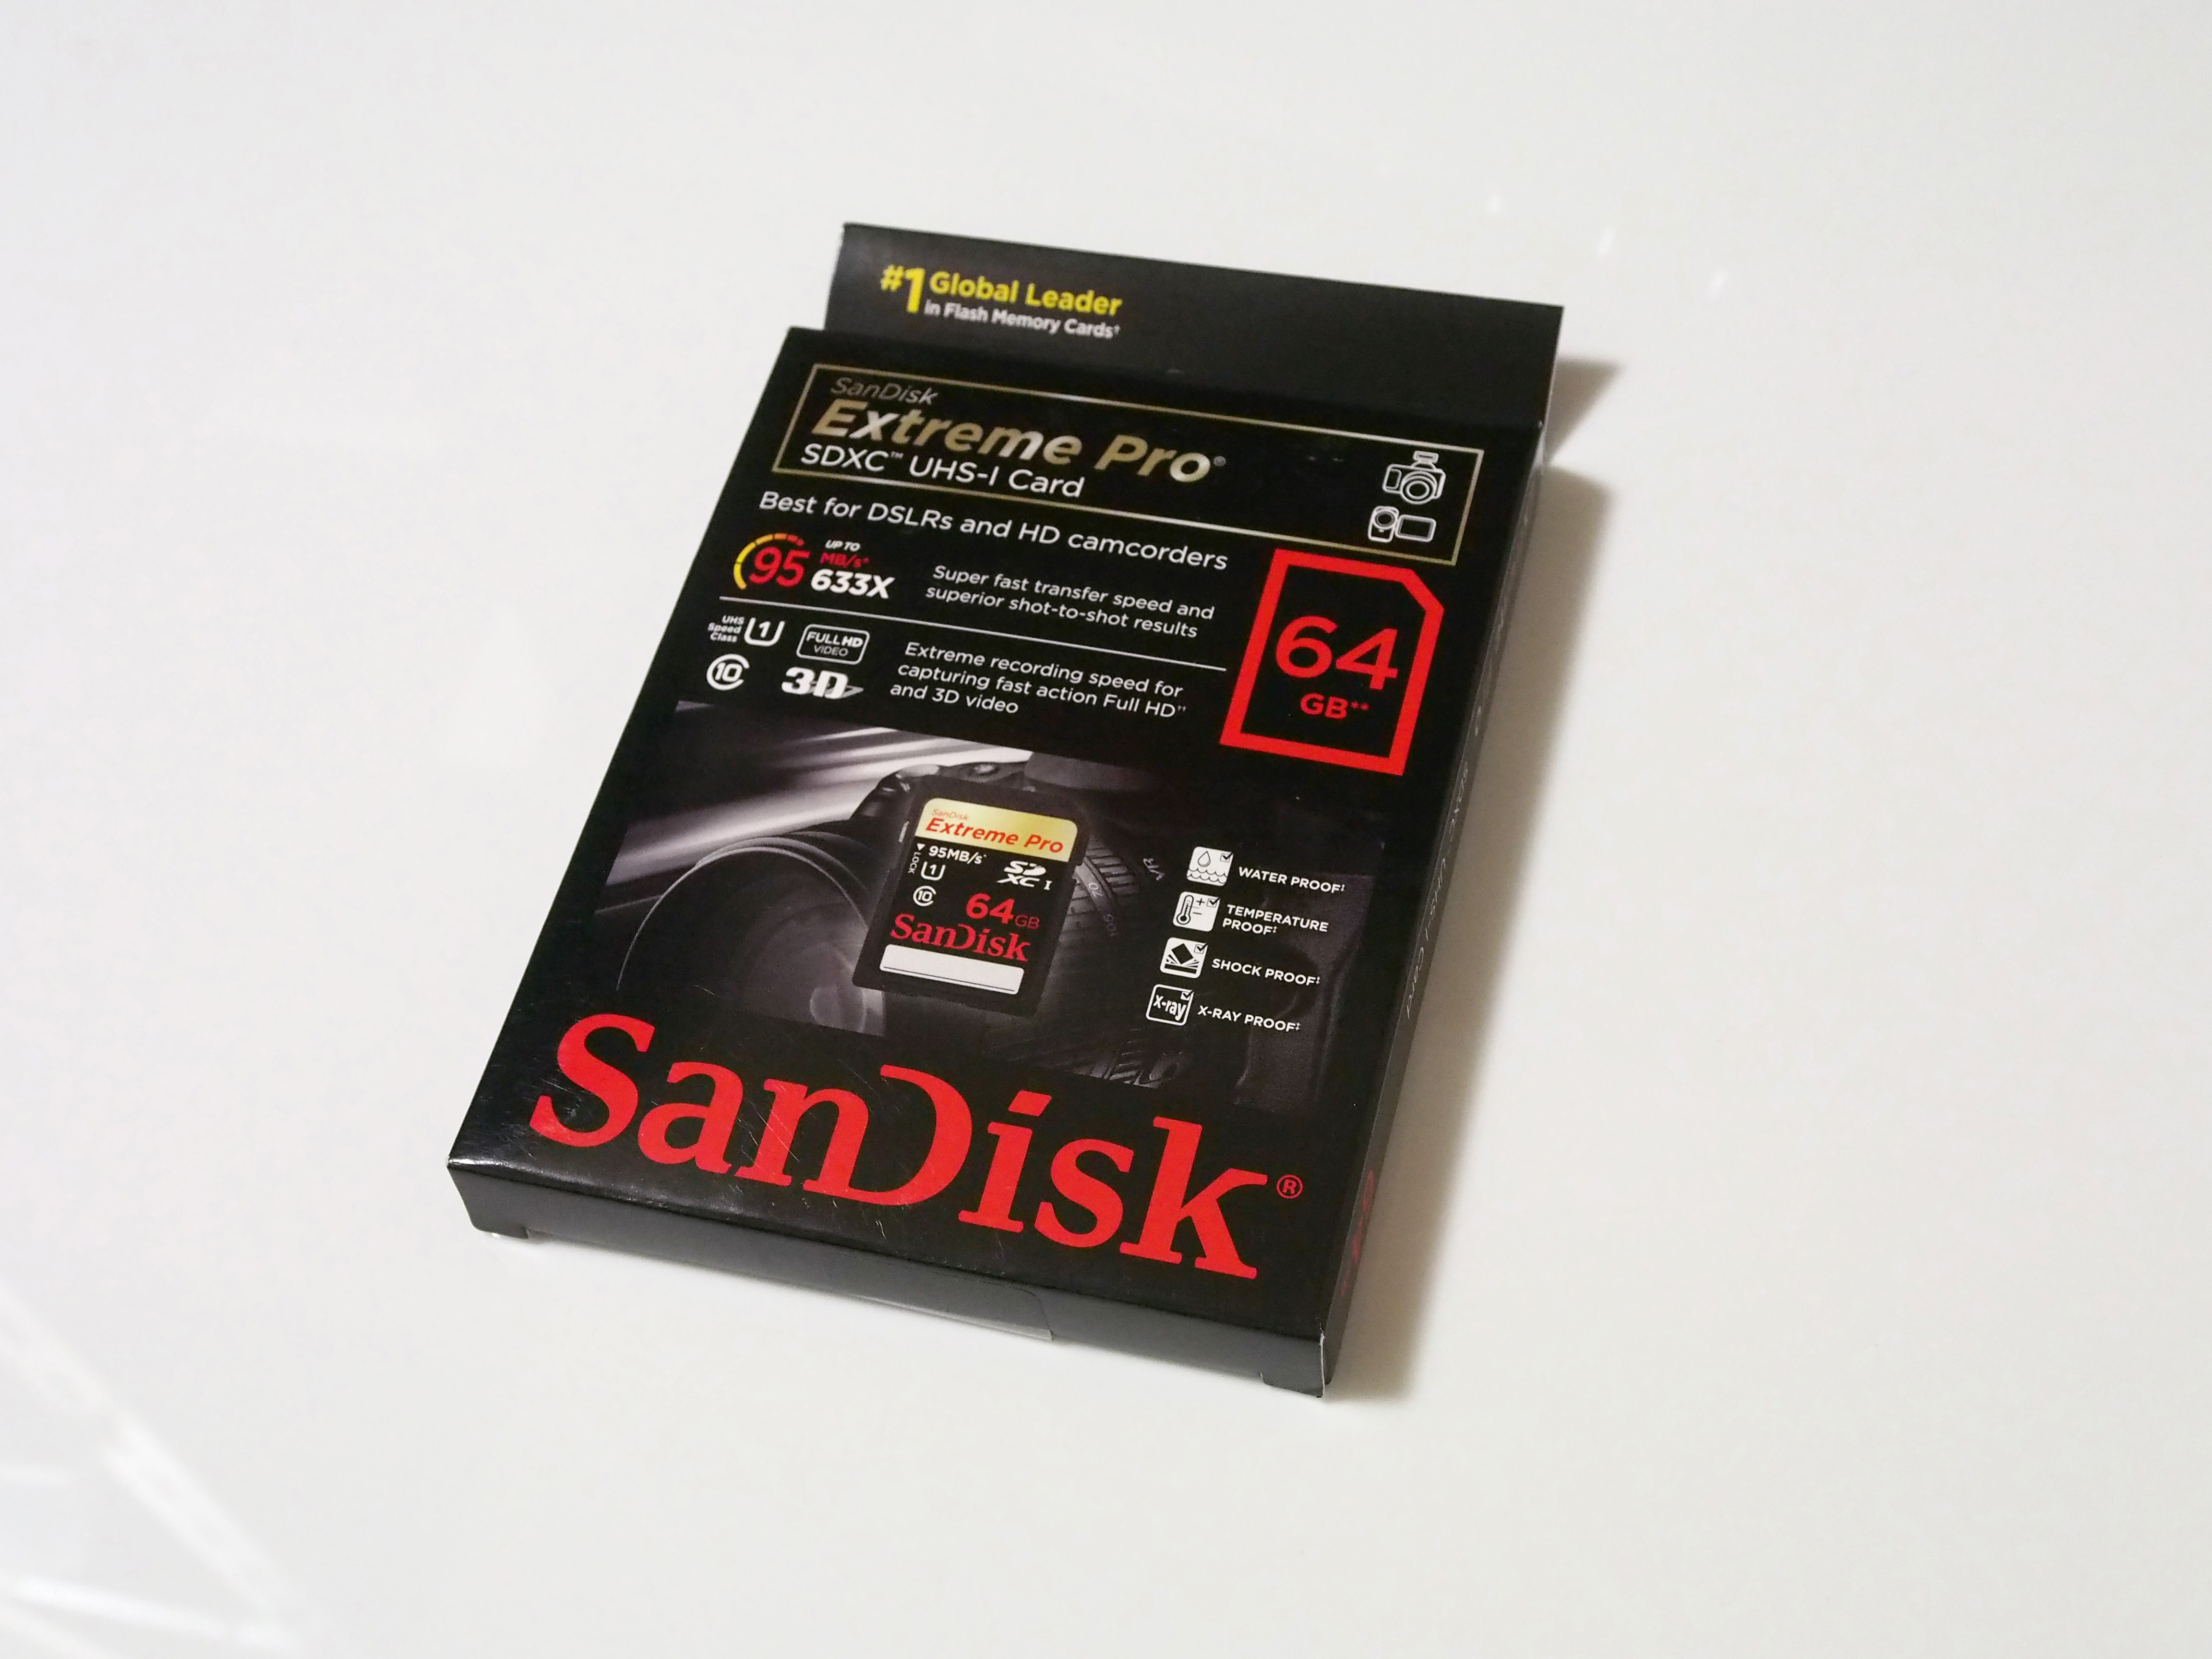 SANDISK (サンディスク) 64GB SDXCカード Extreme Pro SDSDXPA-064G-X46 のレビュー | iPentec